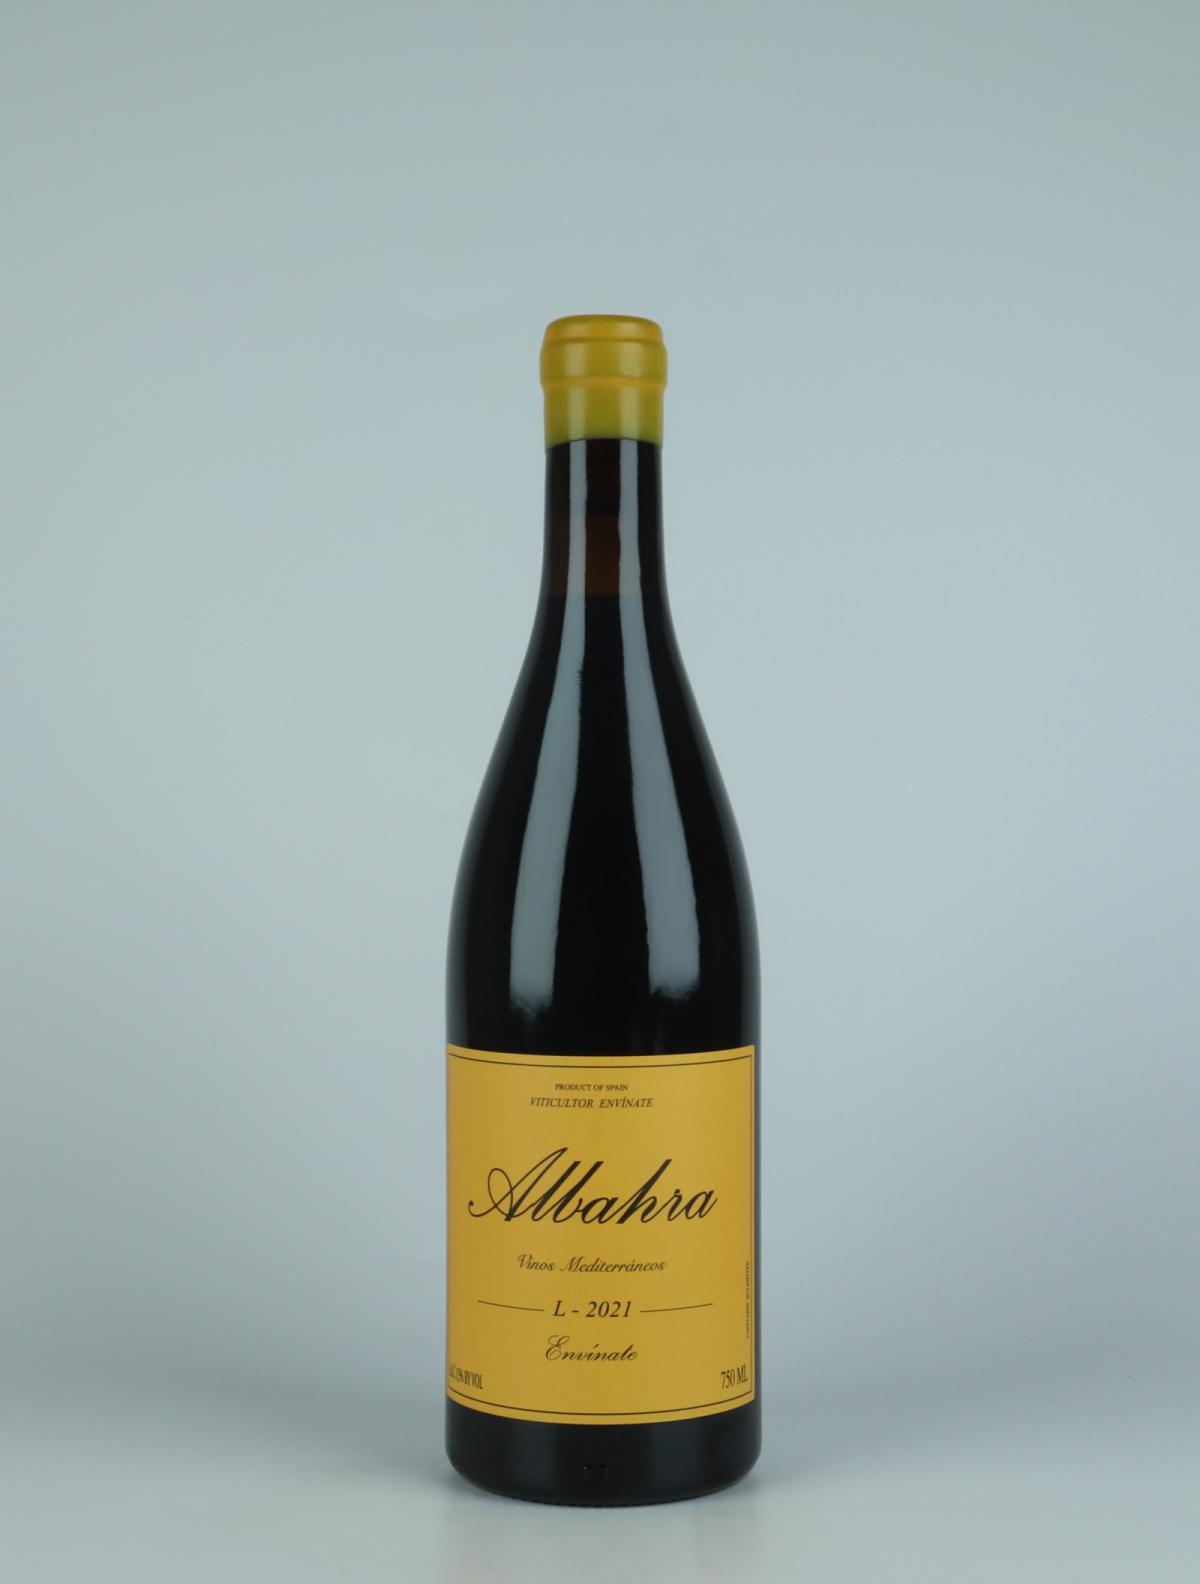 A bottle 2021 Albahra - Almansa Red wine from Envínate, Almansa in Spain